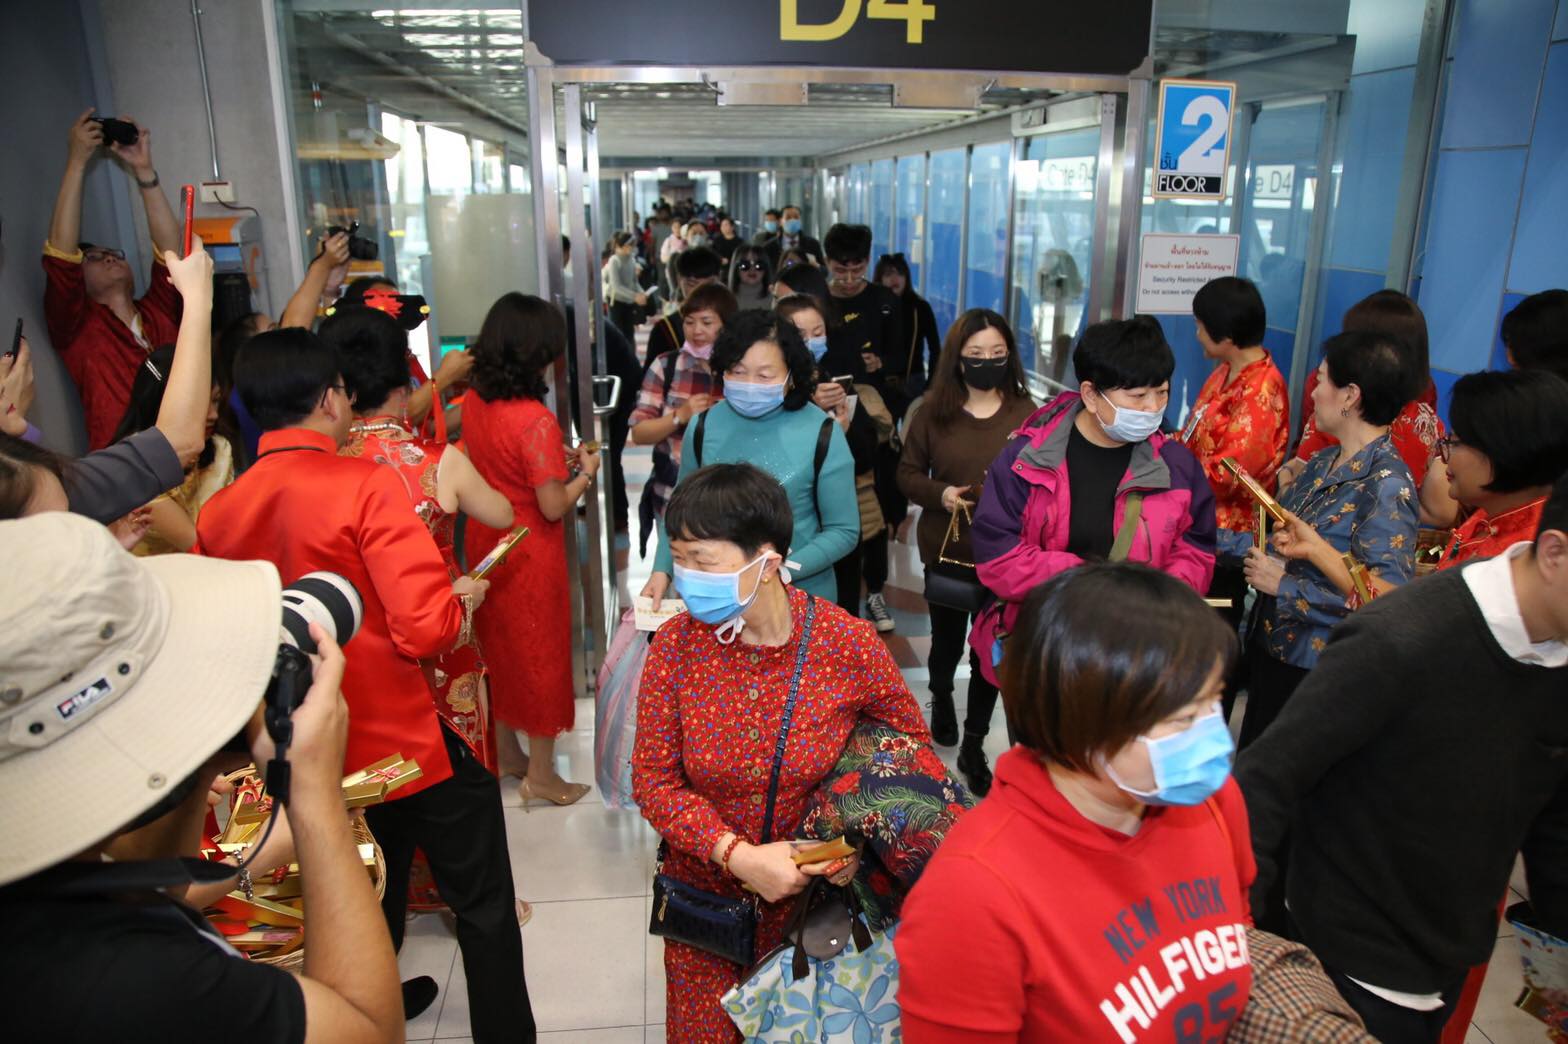 Suvarnabhumi Airport greets Chinese travelers with gifts on Wednesday in Bangkok. Photo: Suvarnabhumi International Airport